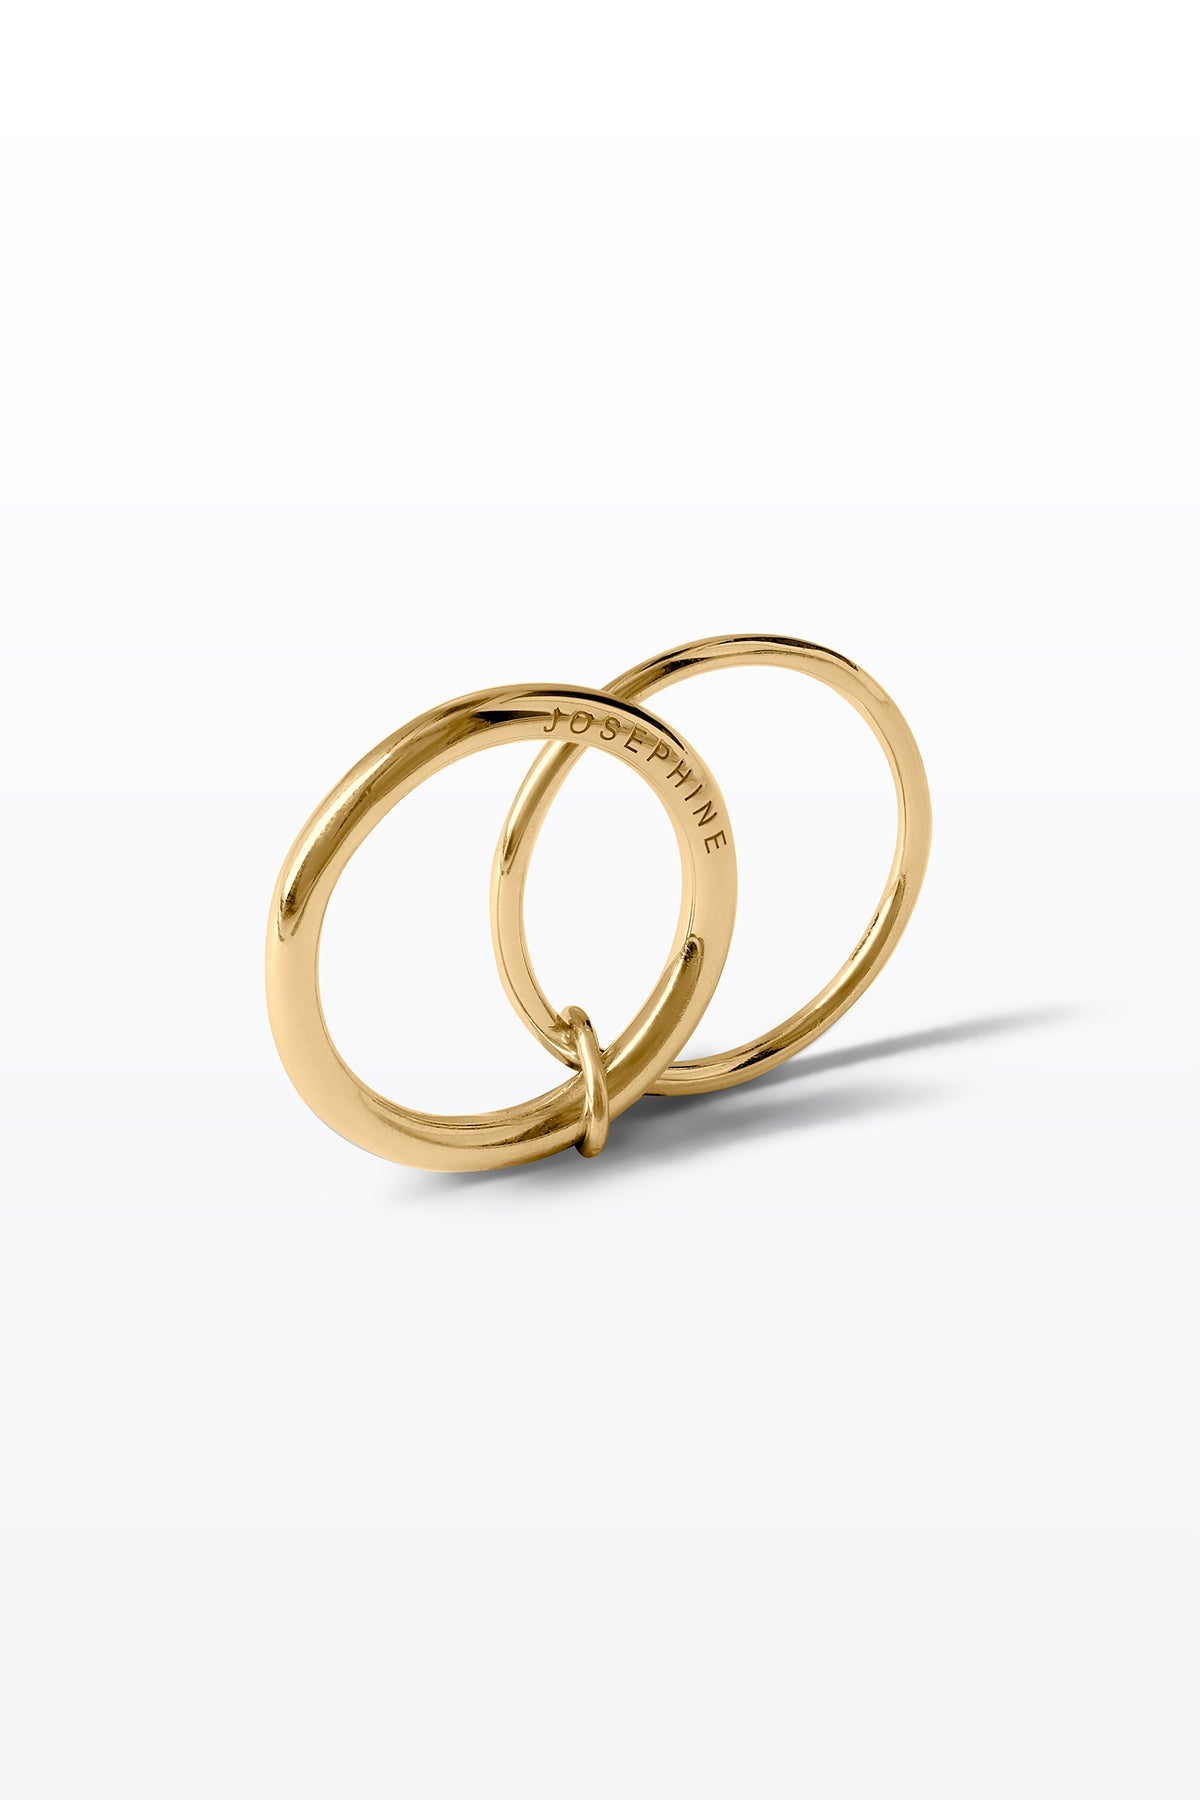 ODE+ Ring 02 18K Yellow Gold